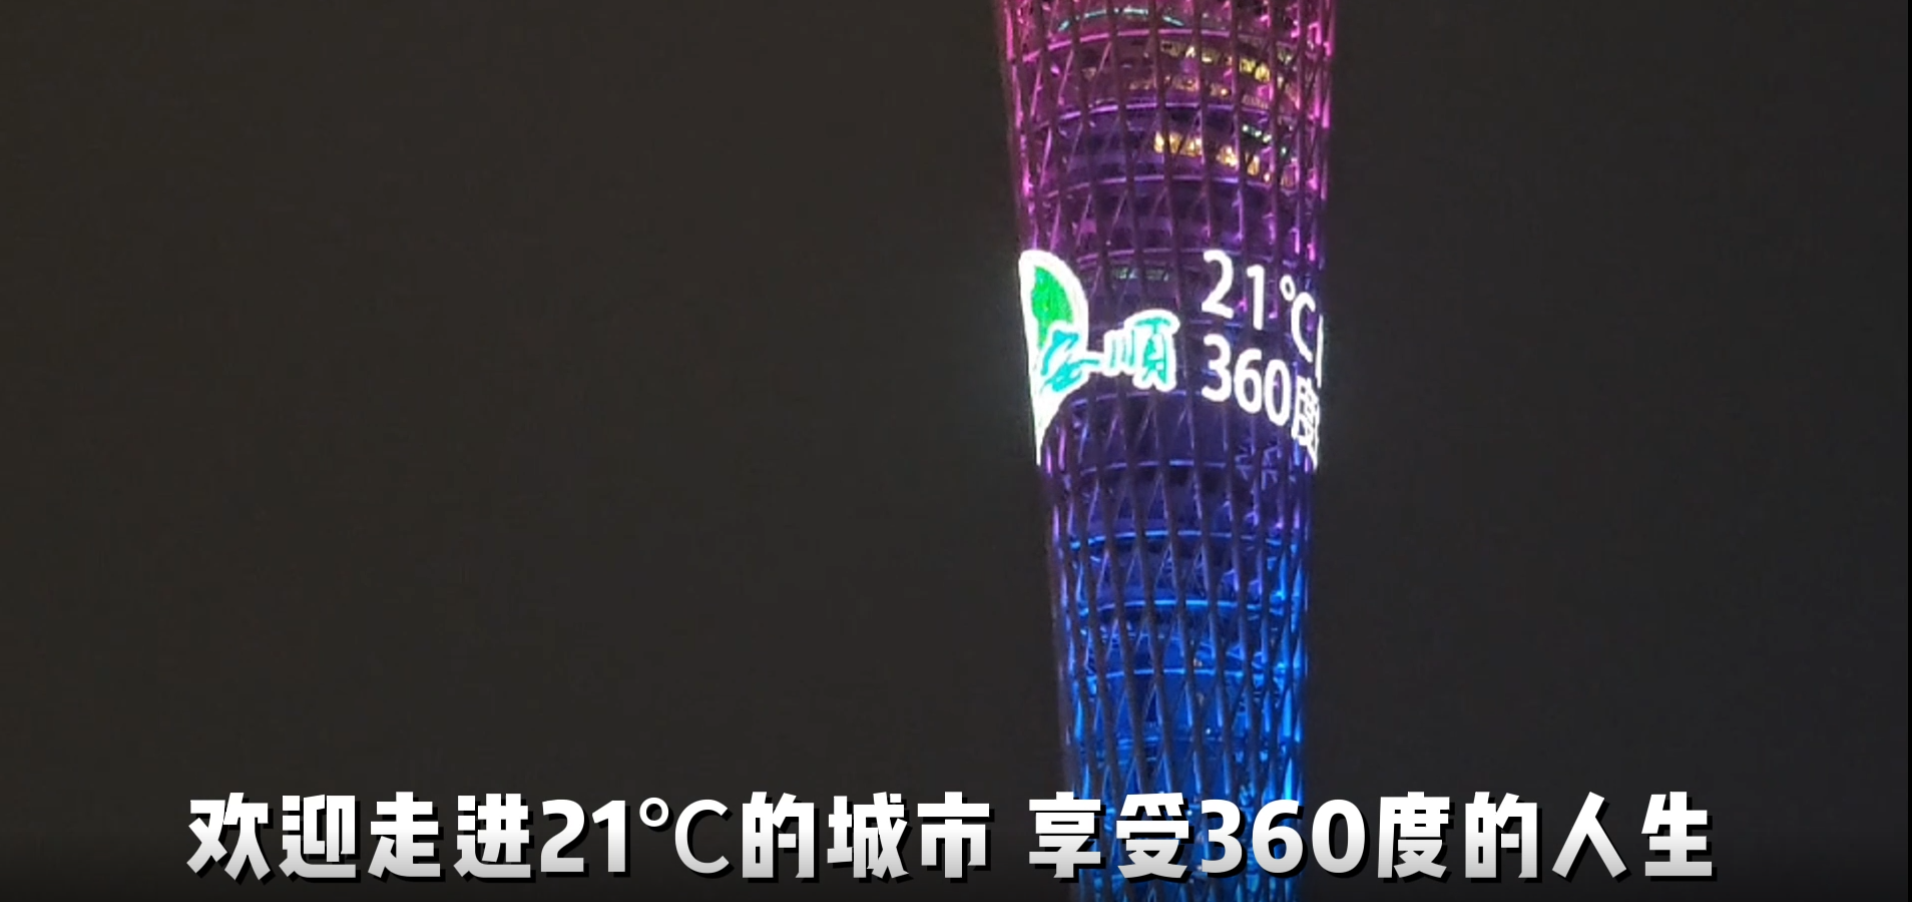 广州“小蛮腰”为安顺点亮丨走进21℃的城市 体验360°的人生